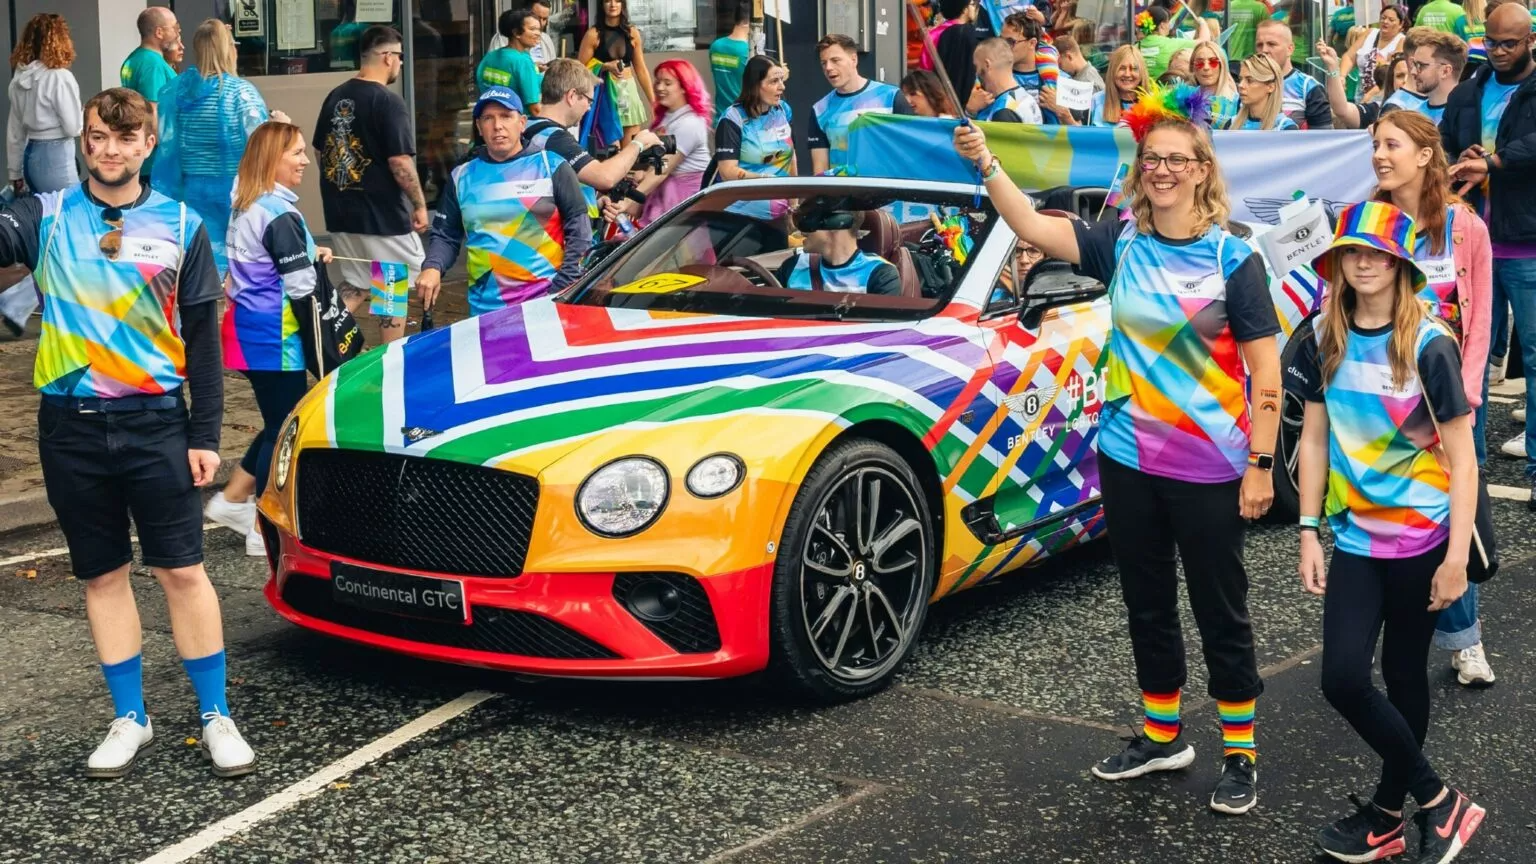 Parada LGBTQ+ tem carro de luxo da Bentley como um dos protagonistas